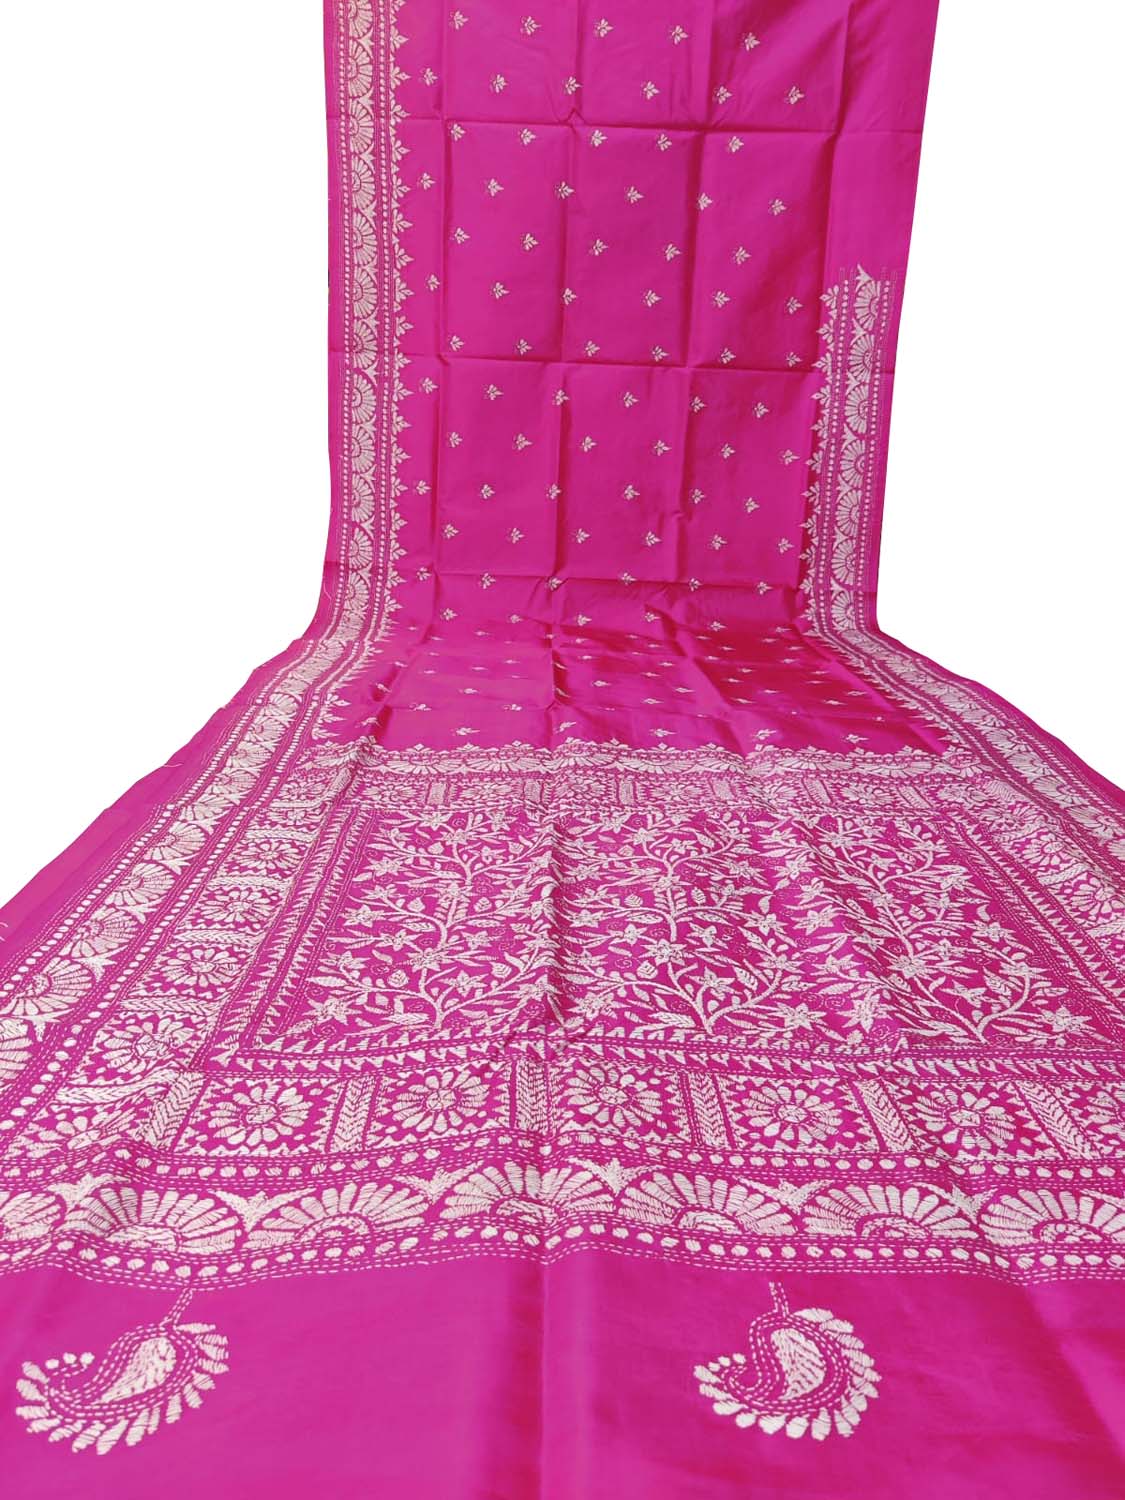 Exquisite Pink Kantha Work Bangalore Silk Saree: Hand-Embroidered Elegance - Luxurion World